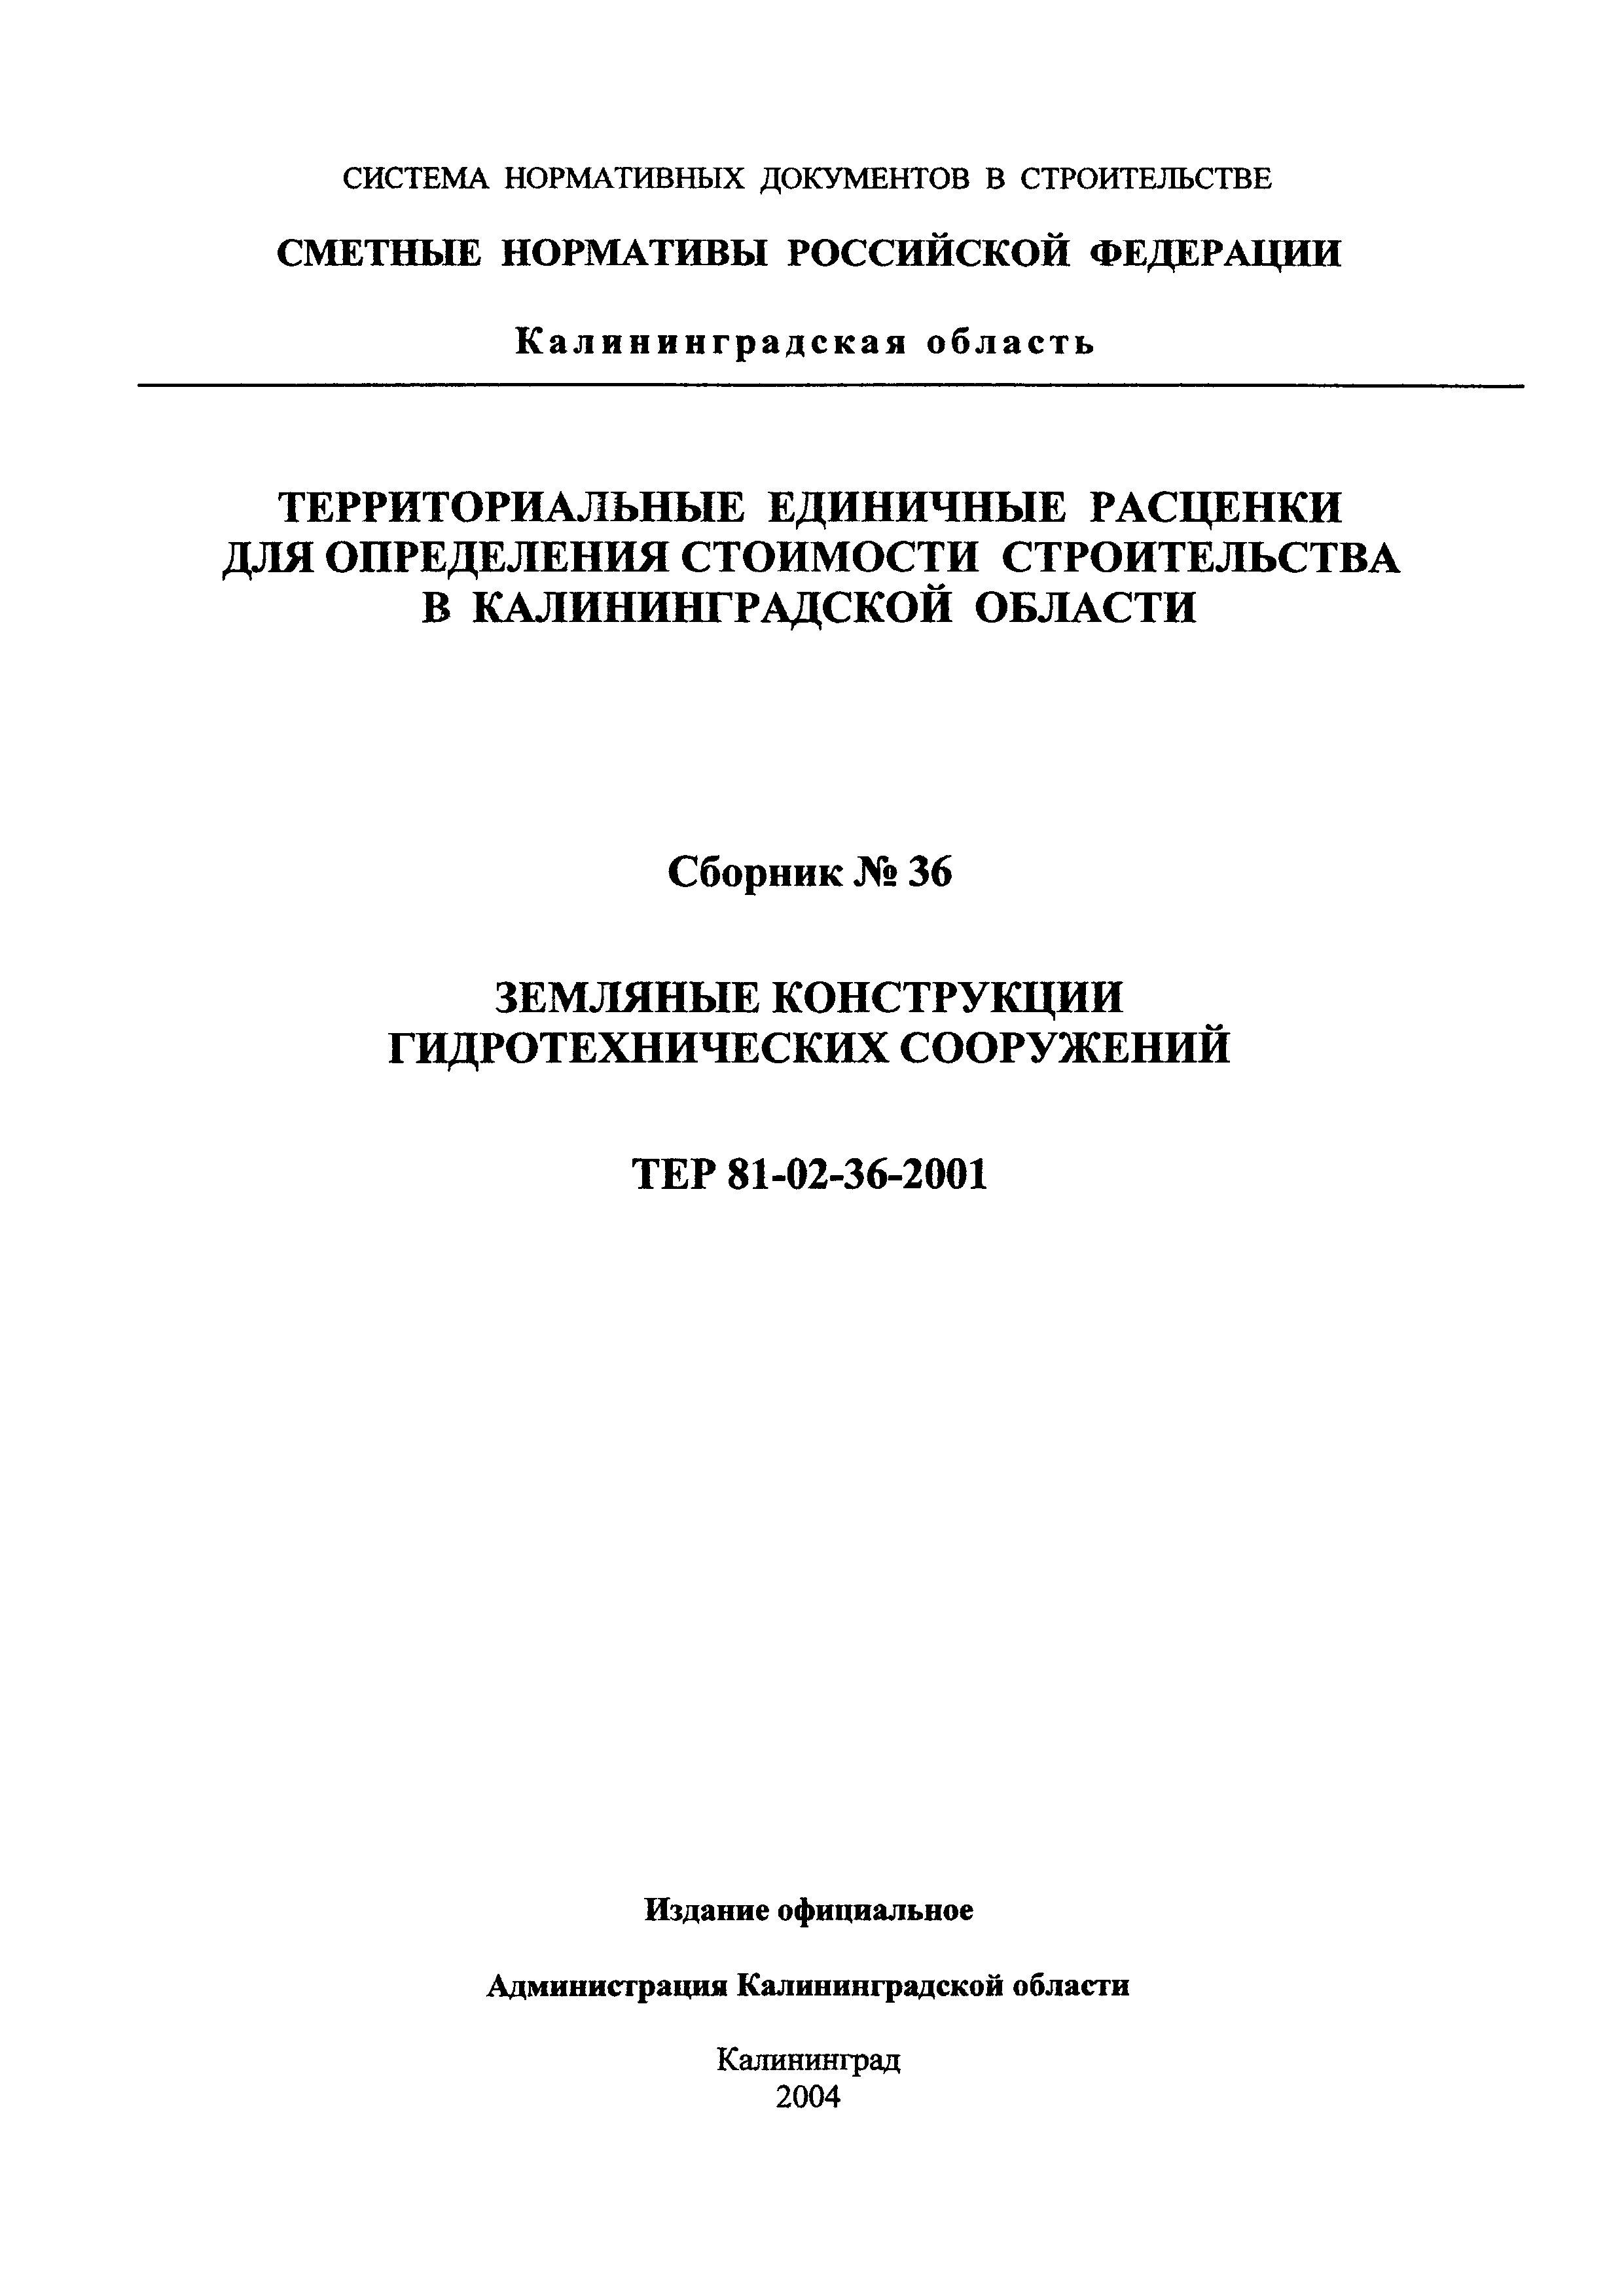 ТЕР Калининградской области 2001-36